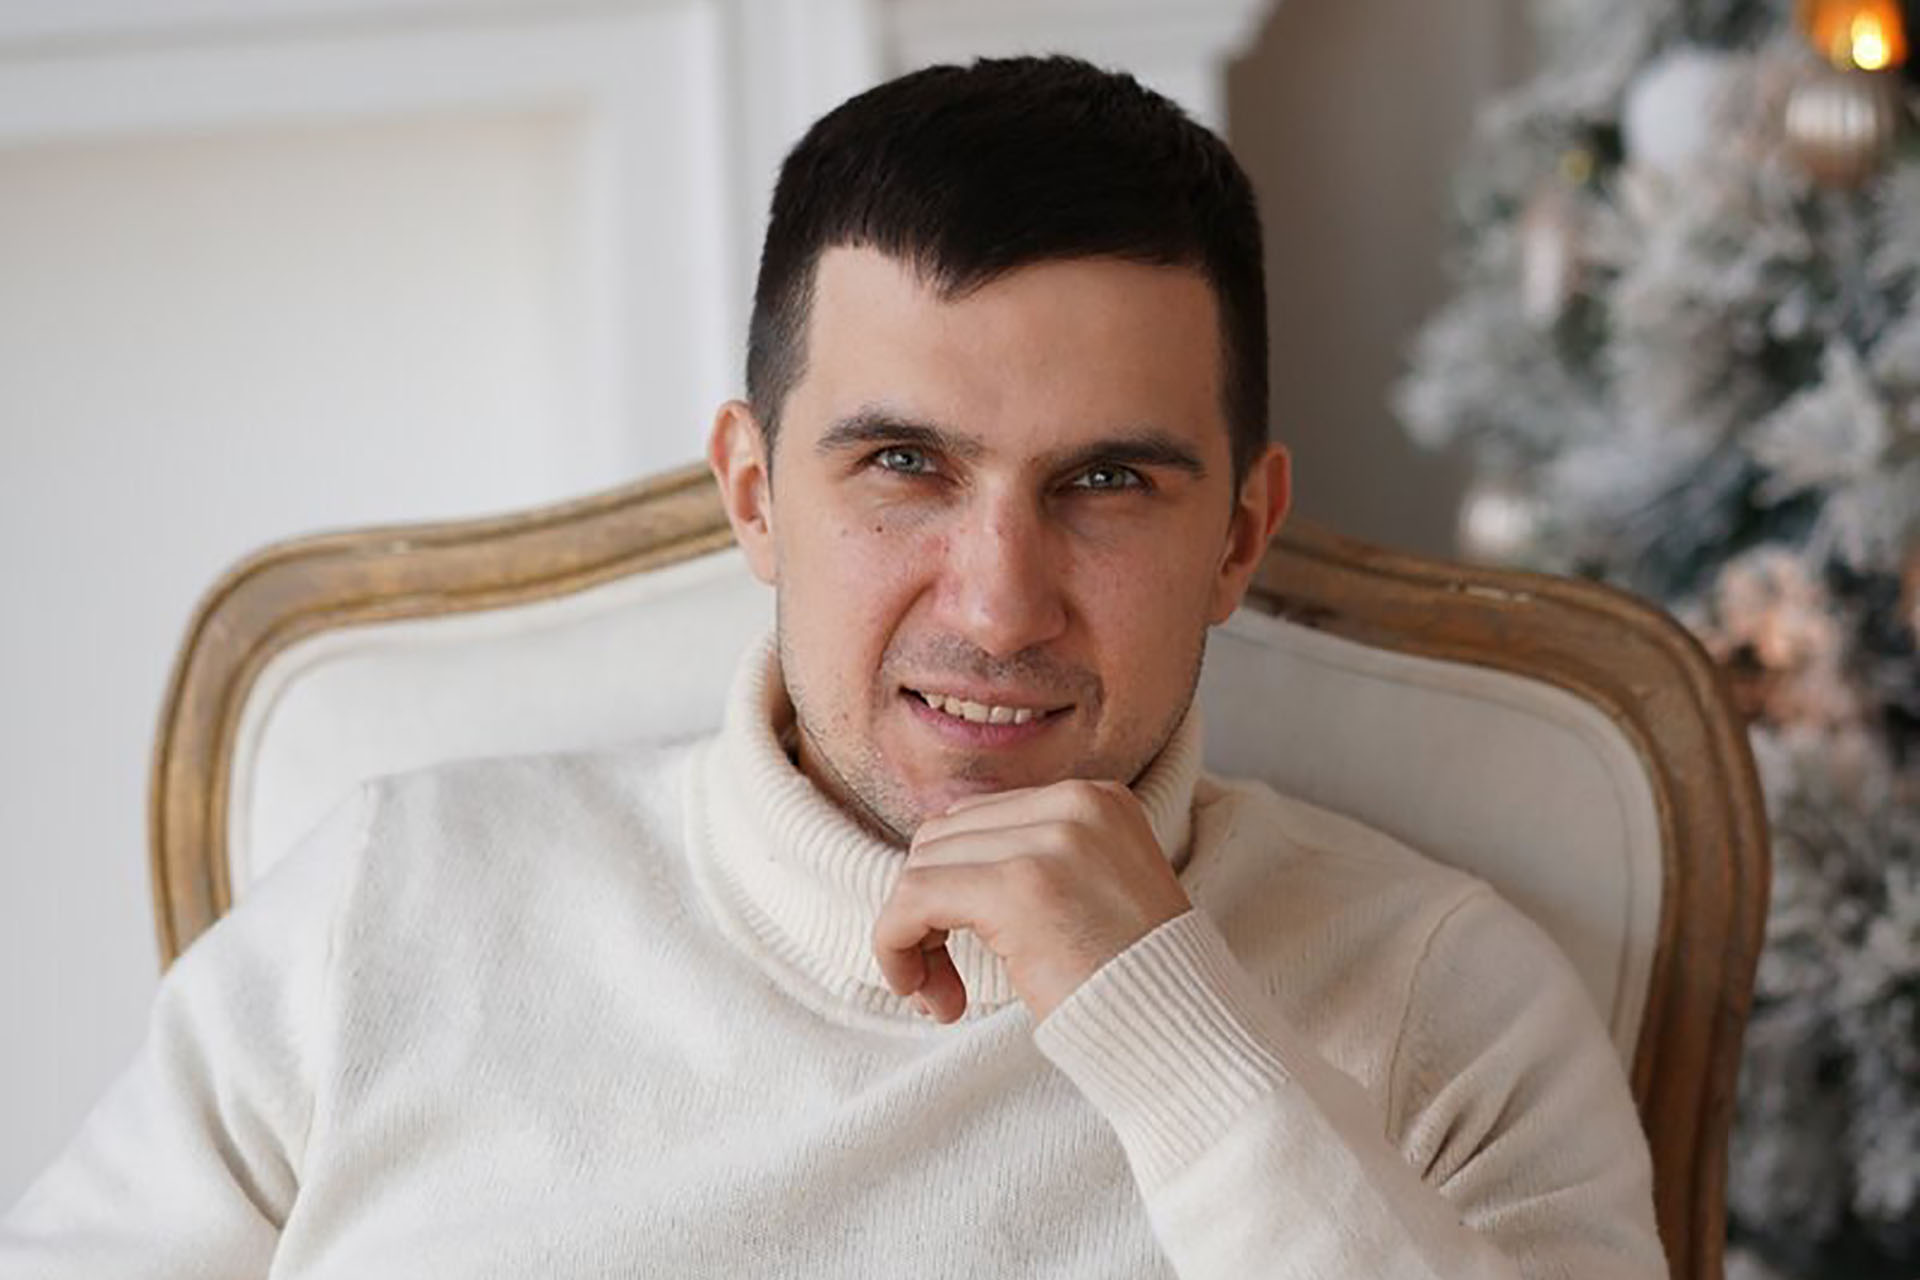 Спикер: Мишин Иван - успешный предприниматель, молодой мультимиллионер